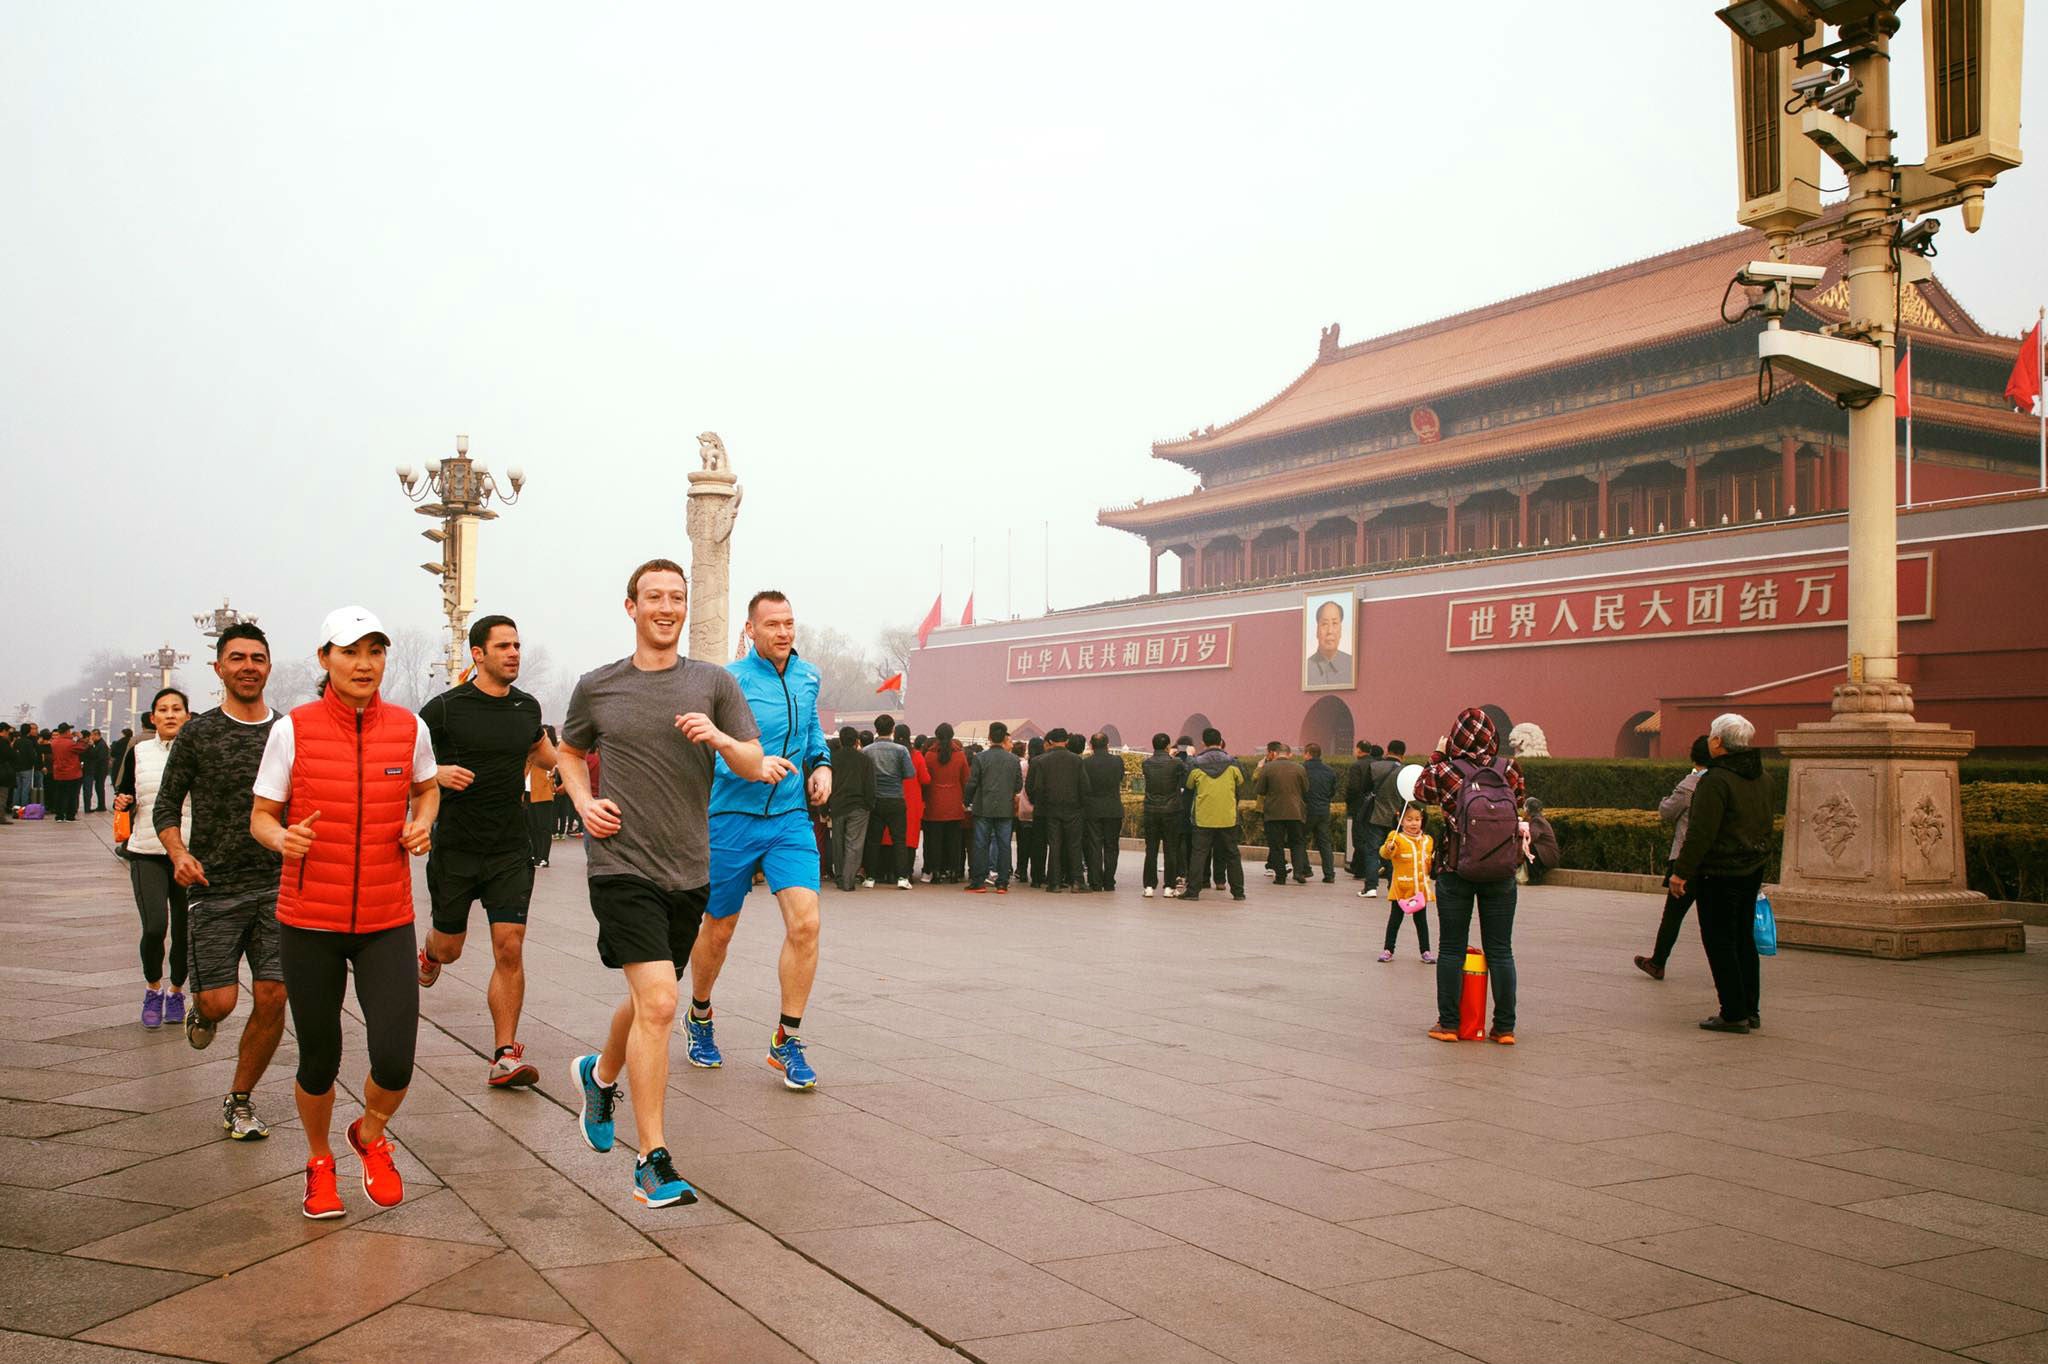 Mr Zuckerberg sparked debate with his jog through Beijing